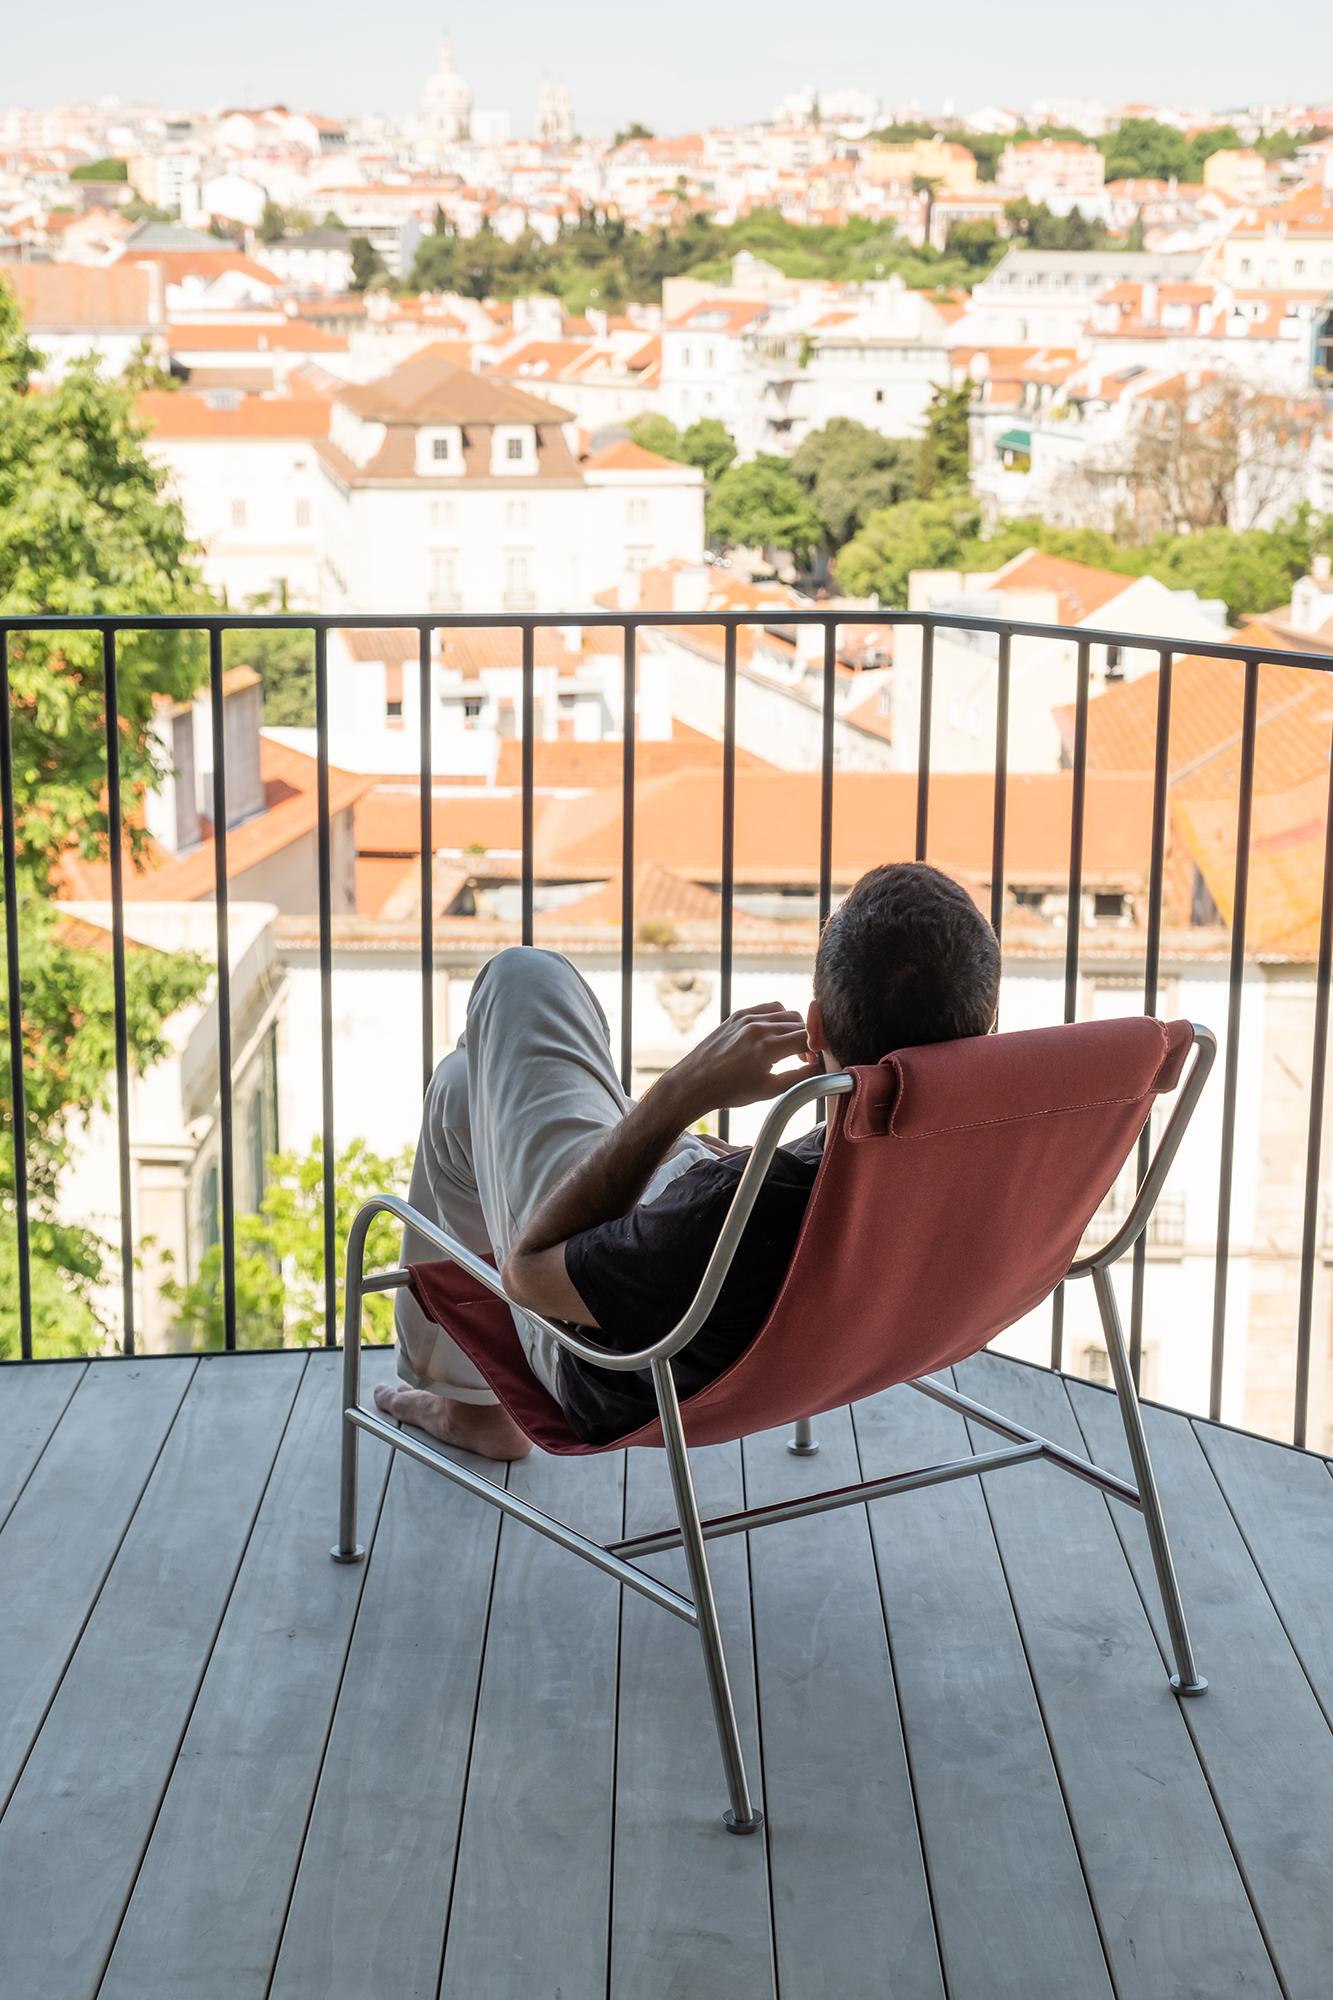 Die Outdoor-Version des LISBOA-Sessels lädt dazu ein, sich in der Sonne zu entspannen und die langen Tage und warmen Sommernächte zu genießen. 

Der für das Leben im Freien konzipierte Stuhl ist dank der offenen Struktur aus Edelstahlrohren sehr